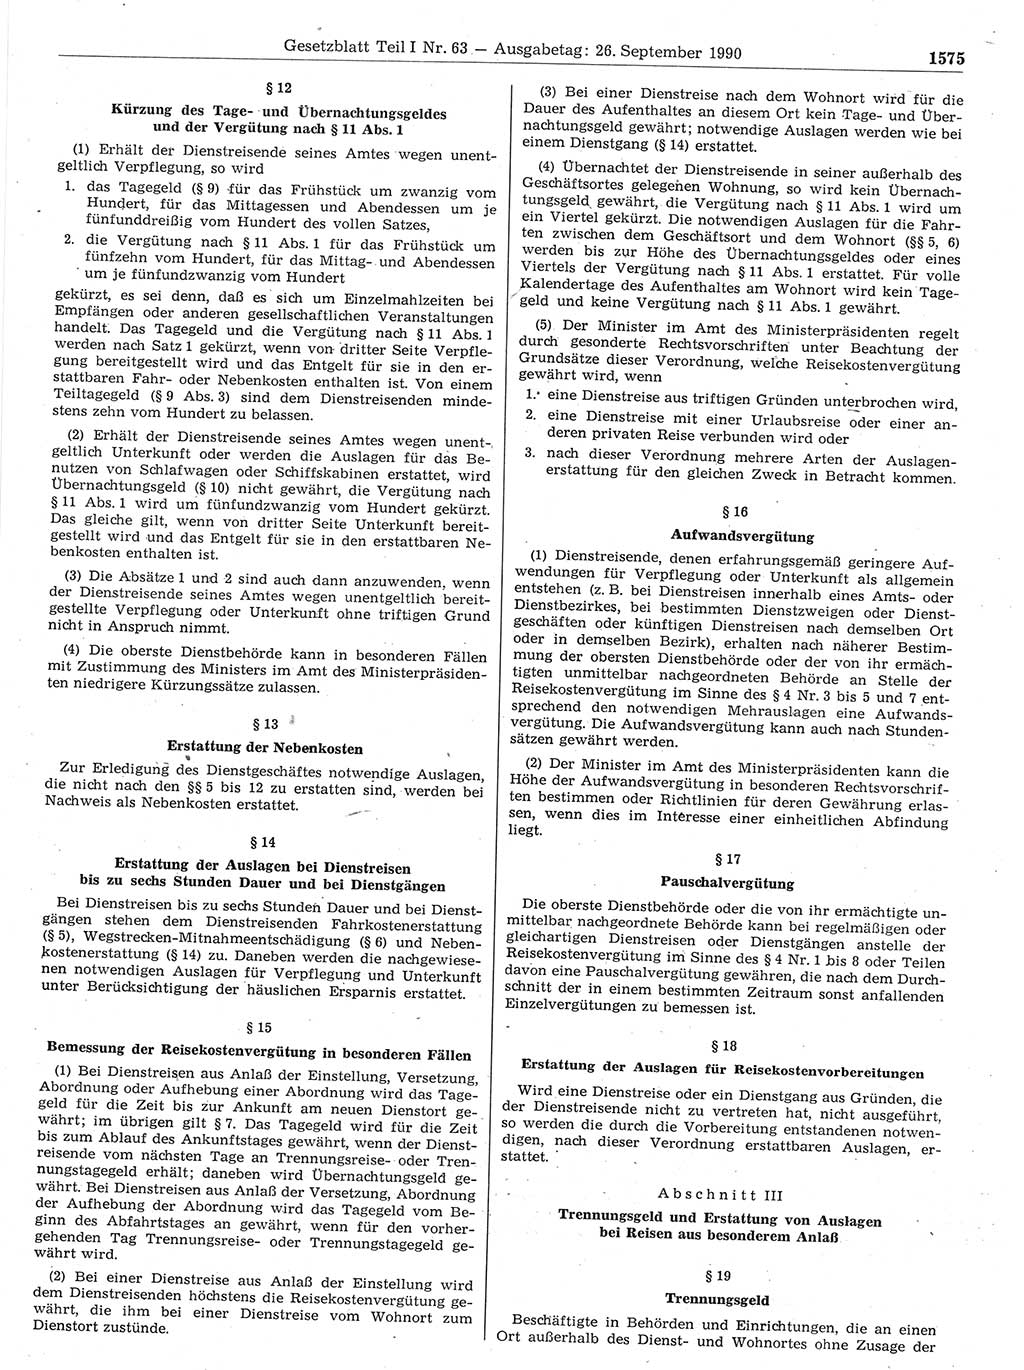 Gesetzblatt (GBl.) der Deutschen Demokratischen Republik (DDR) Teil Ⅰ 1990, Seite 1575 (GBl. DDR Ⅰ 1990, S. 1575)